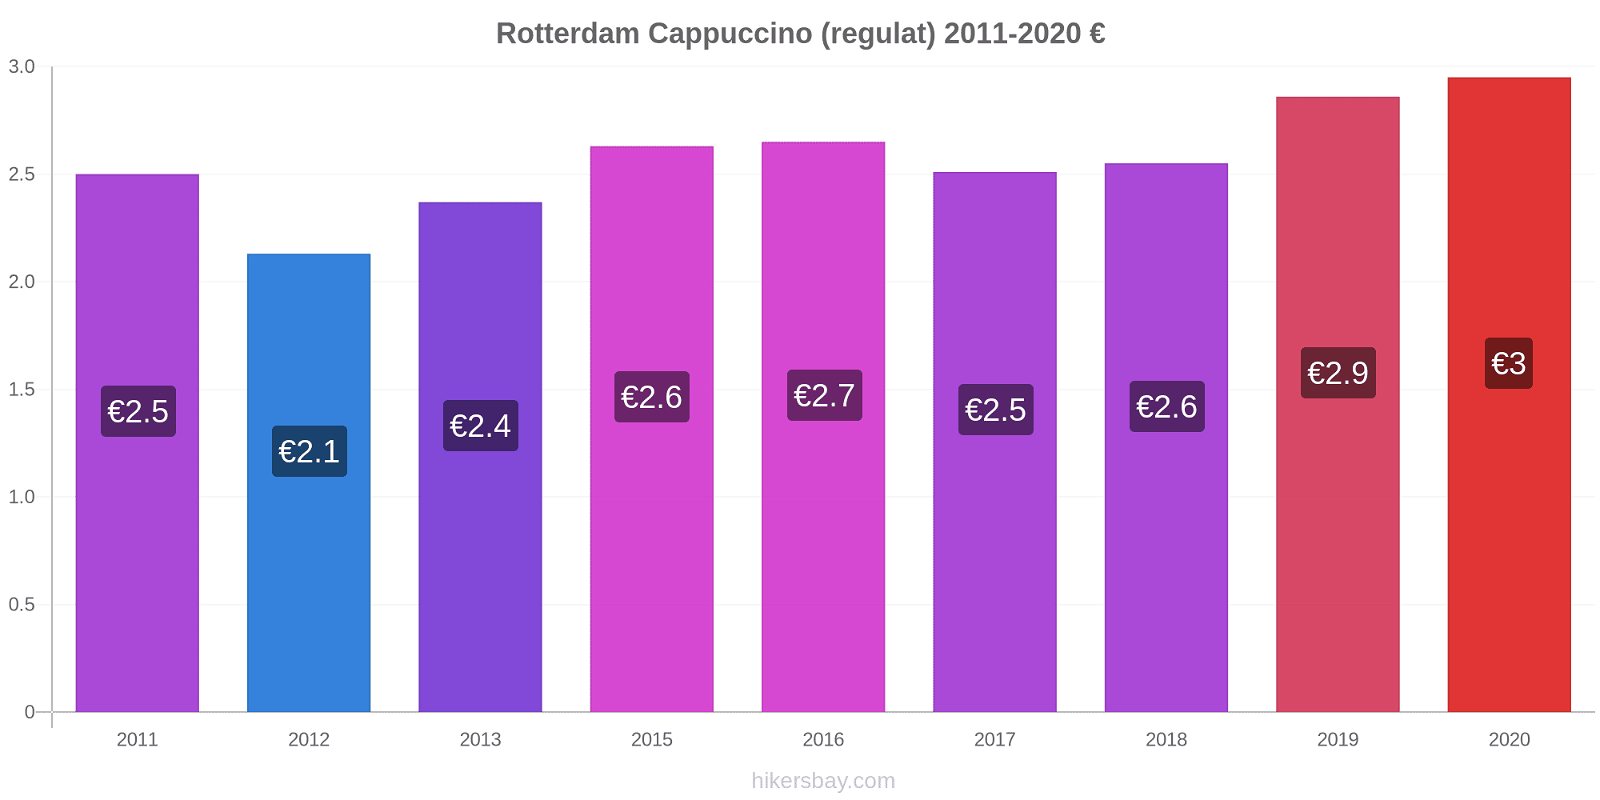 Rotterdam modificări de preț Cappuccino (regulat) hikersbay.com